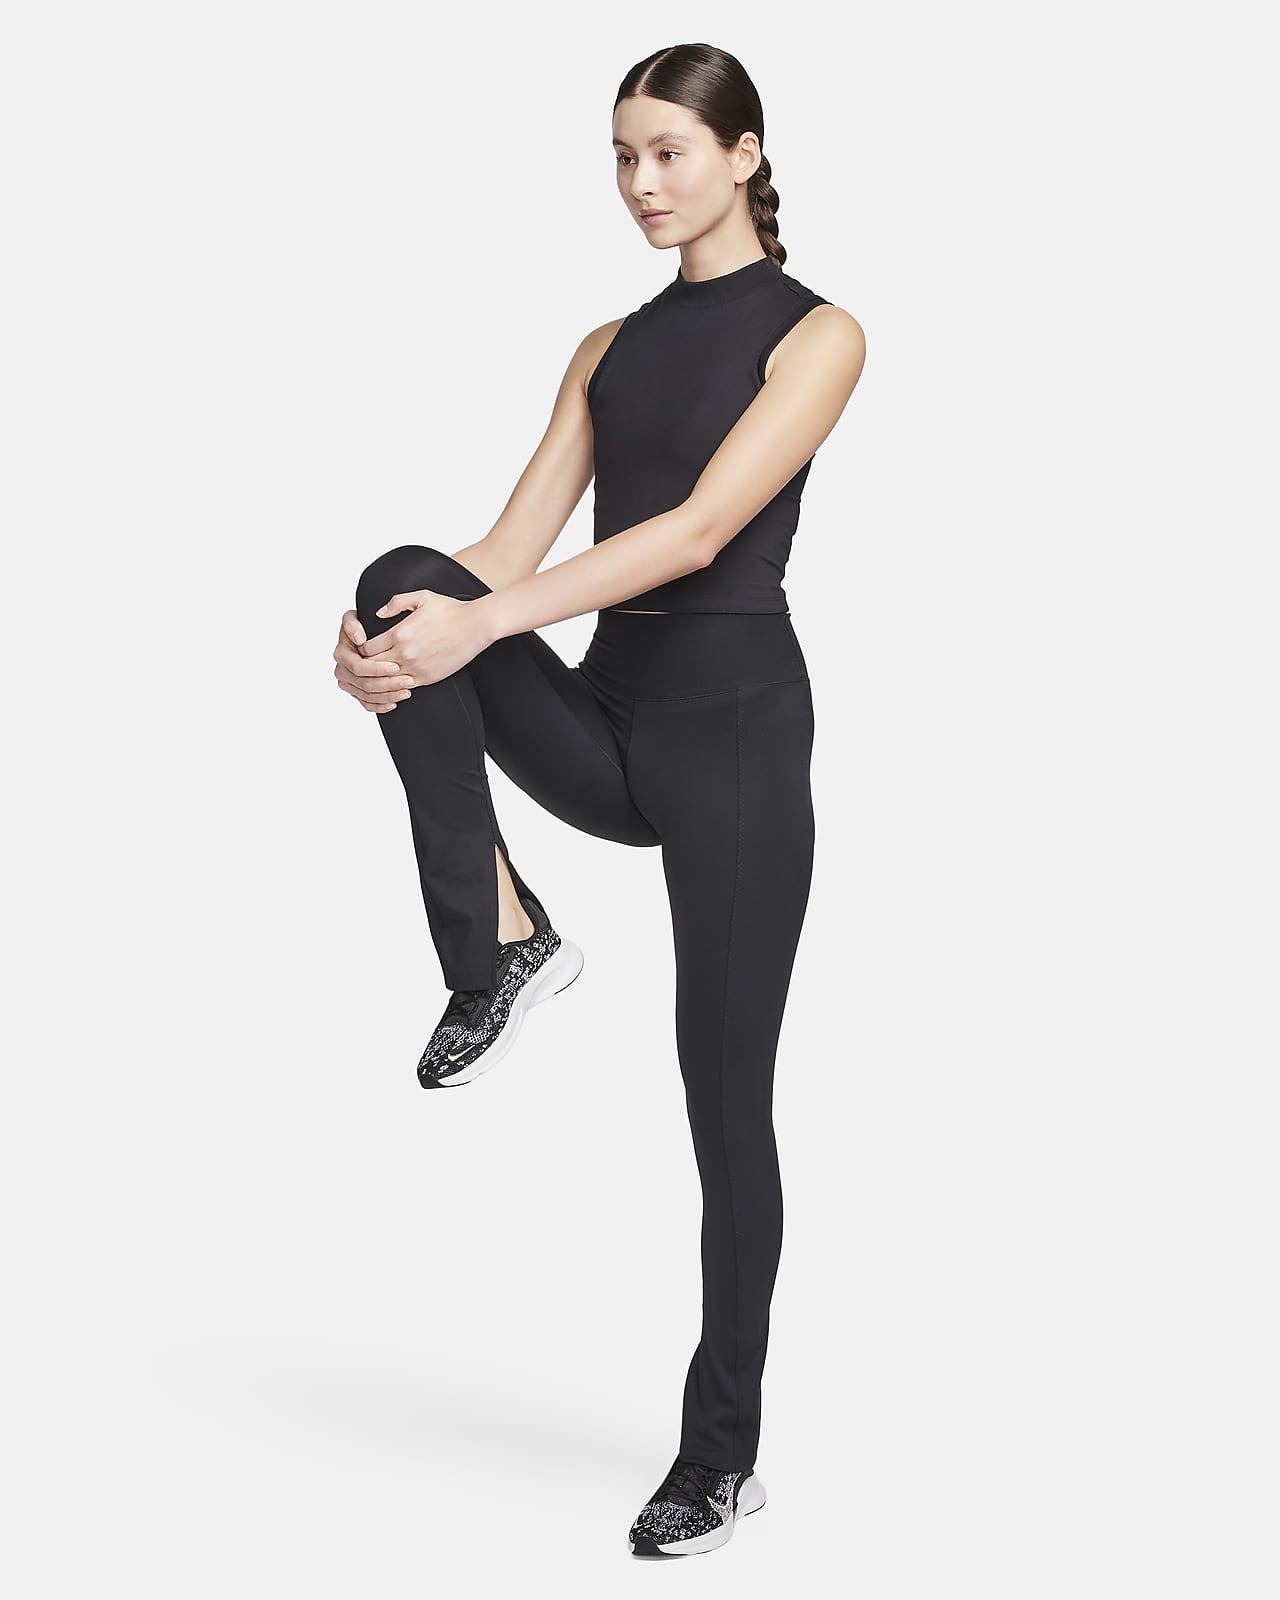 Damskie legginsy o pełnej długości z wysokim stanem i rozcięciem u dołu  Nike One